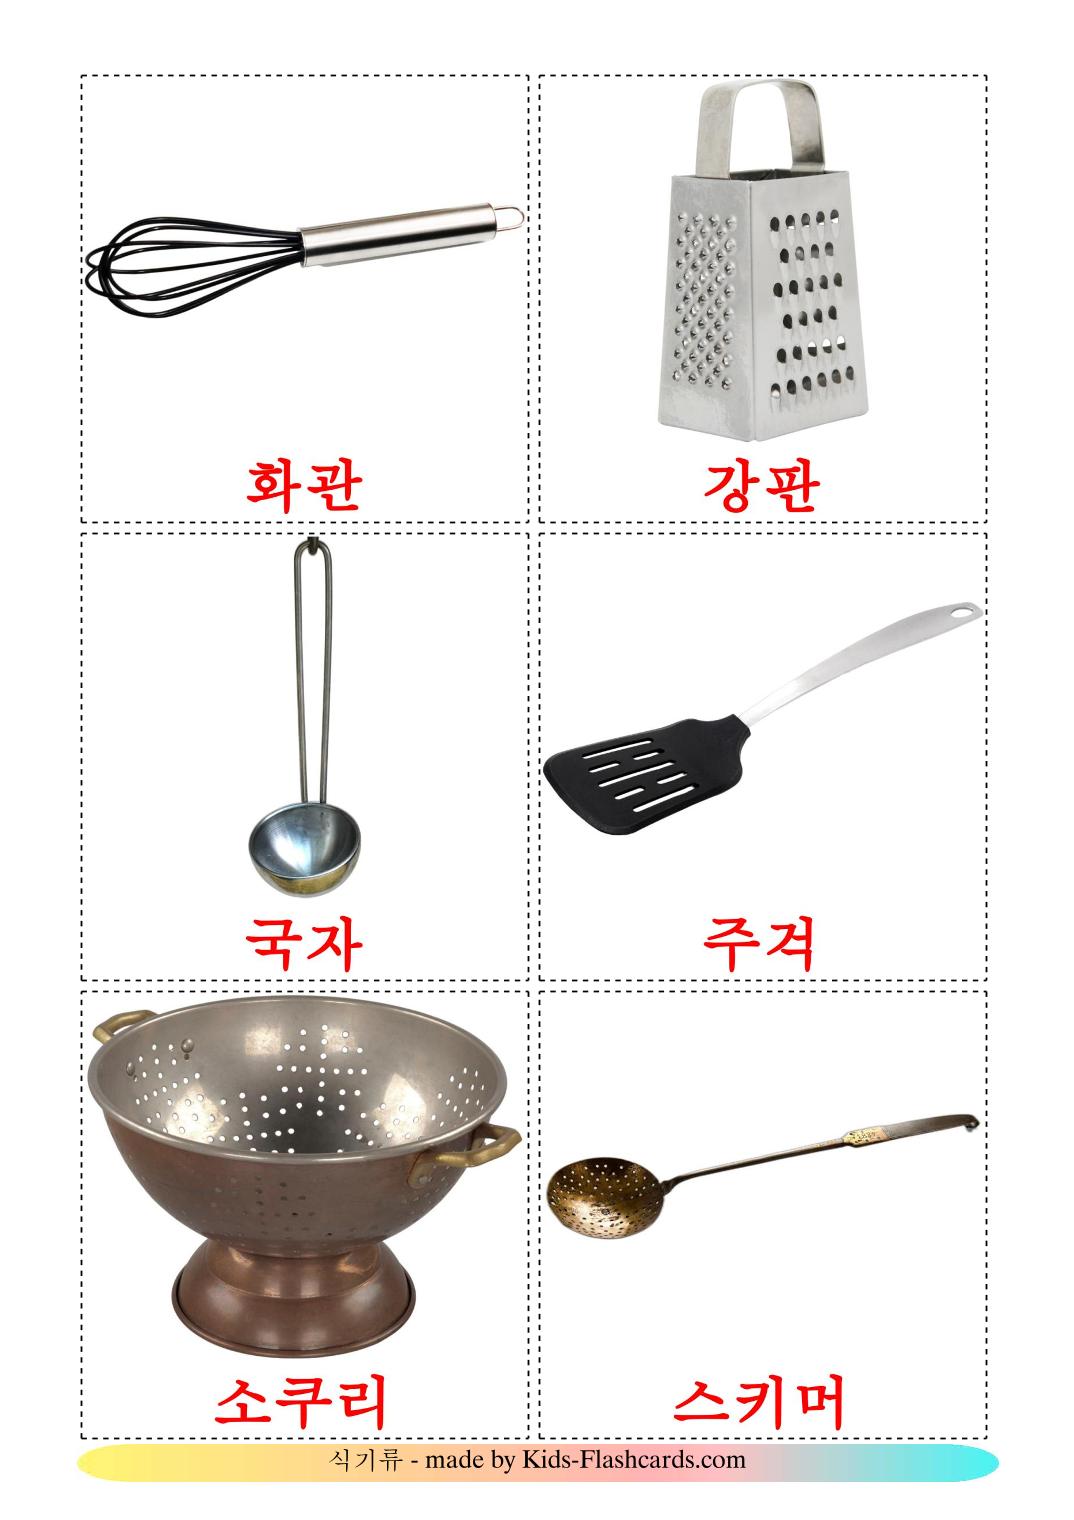 Utensilios de cocina - 31 fichas de coreano para imprimir gratis 